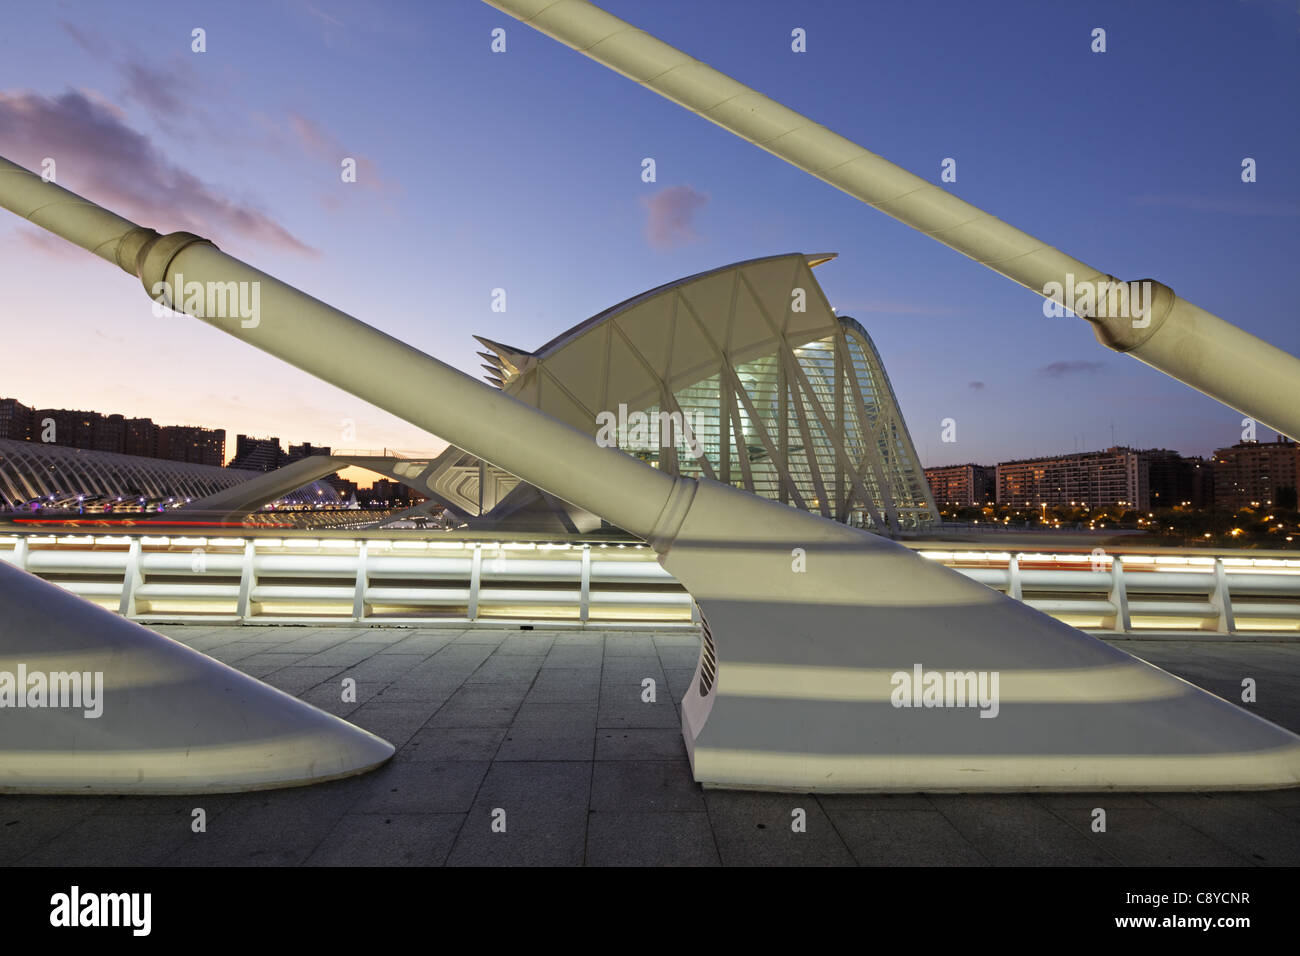 City of sciences and arts by architect Santiago Calatrava, Valencia , Spain, Stock Photo